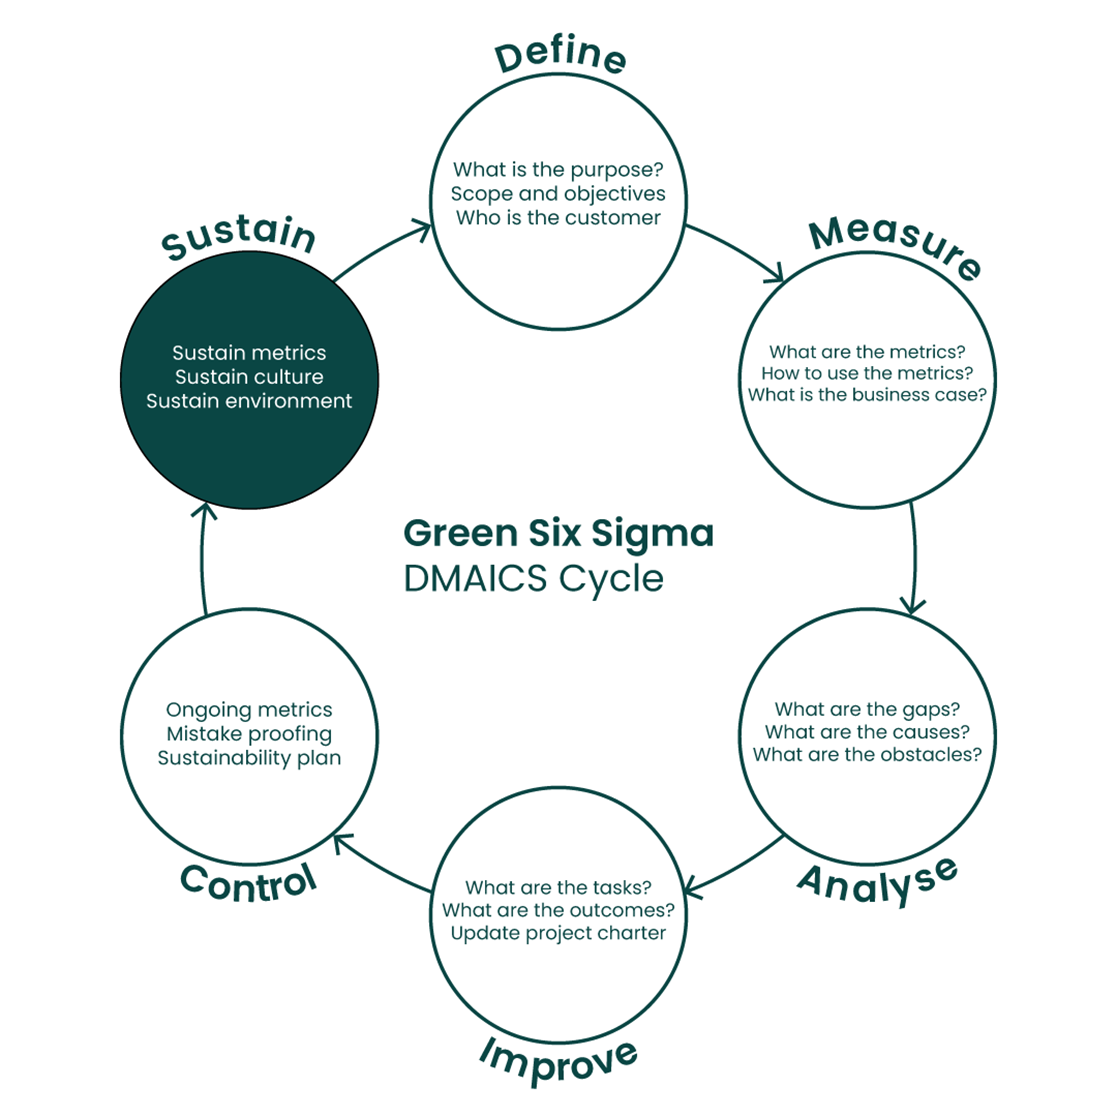 Green Six Sigma, Ron Basu